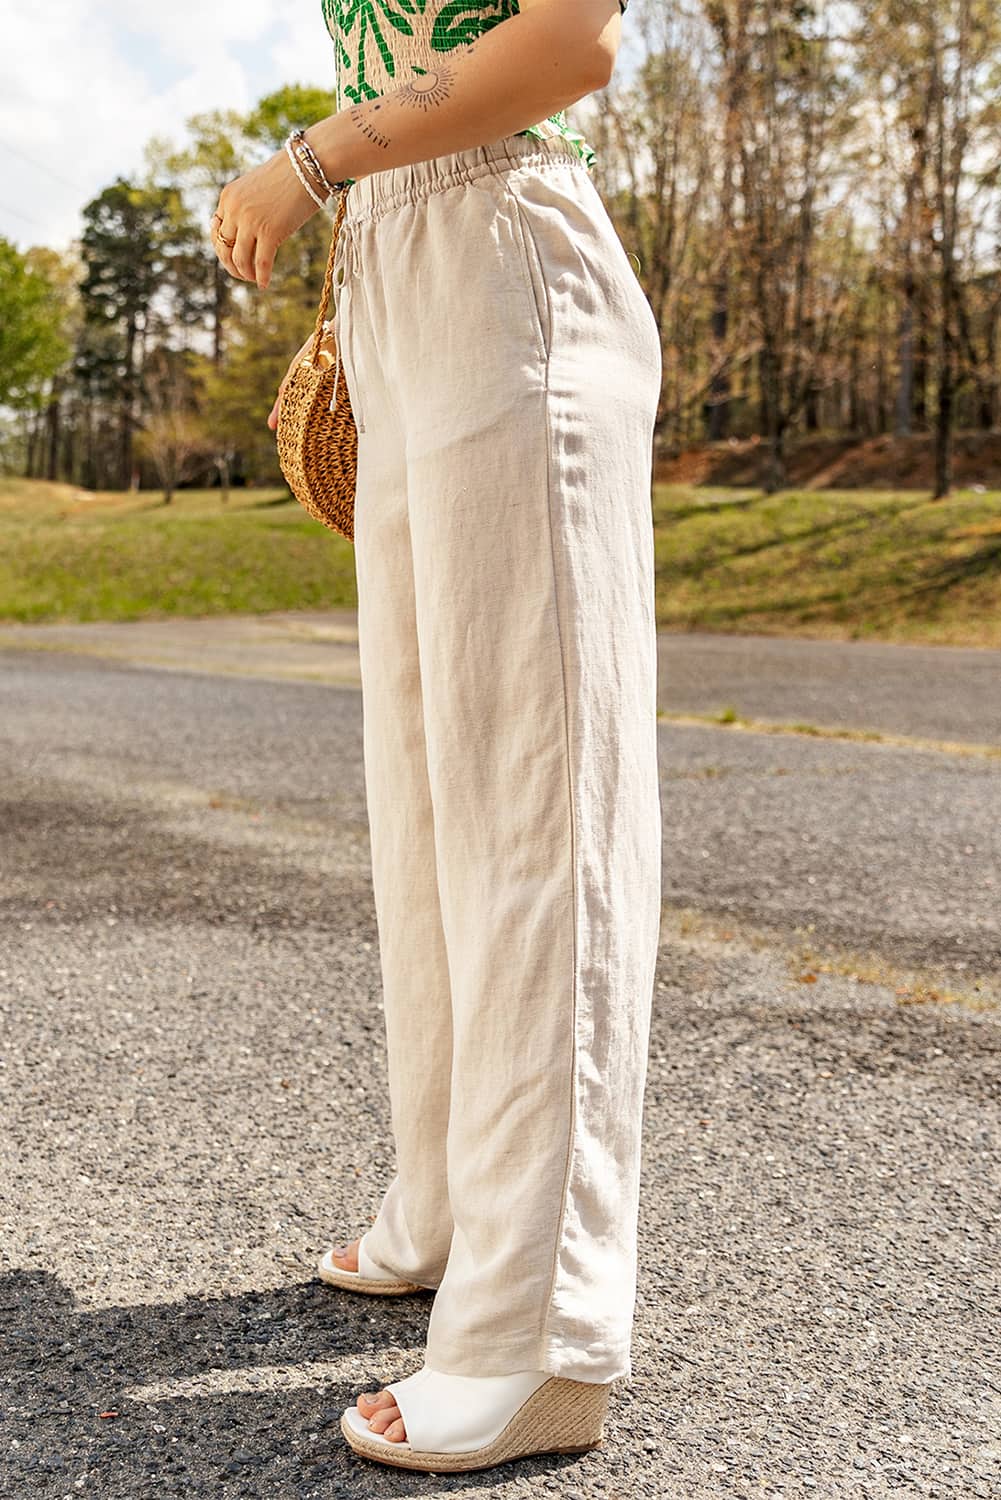 Široke hlače s elastičnom vezom u struku boje marelice